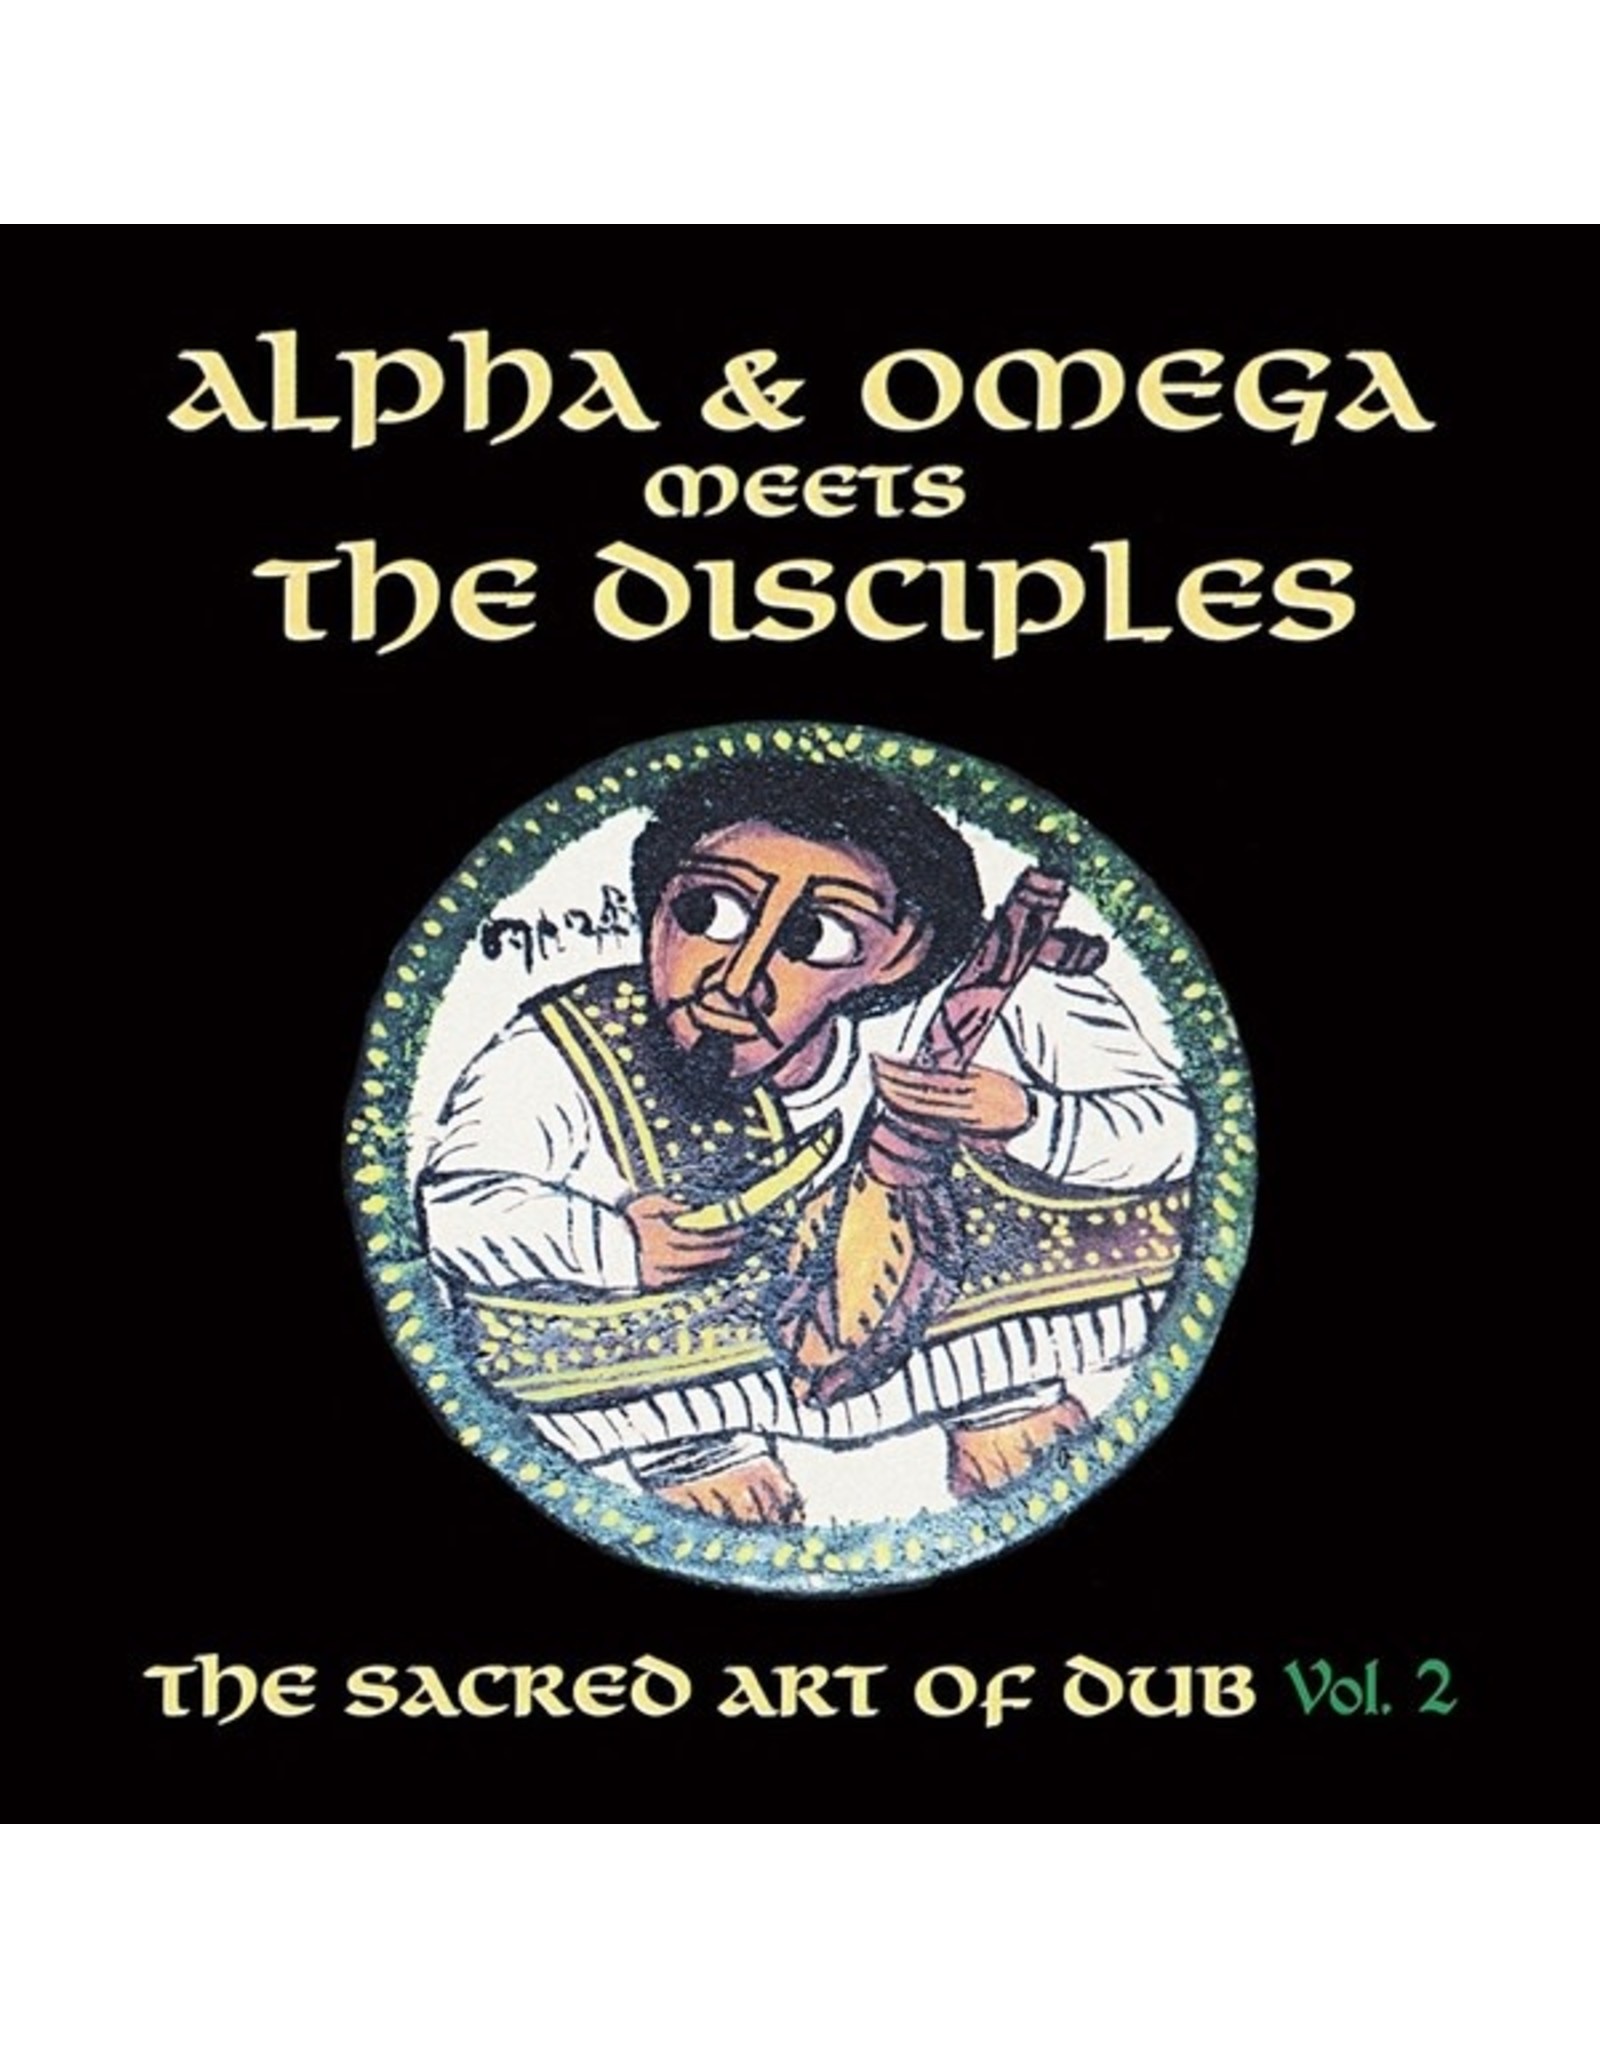 New Vinyl Alpha & Omega Meet The Disciples - Sacred Art Of Dub Vol. 2 LP